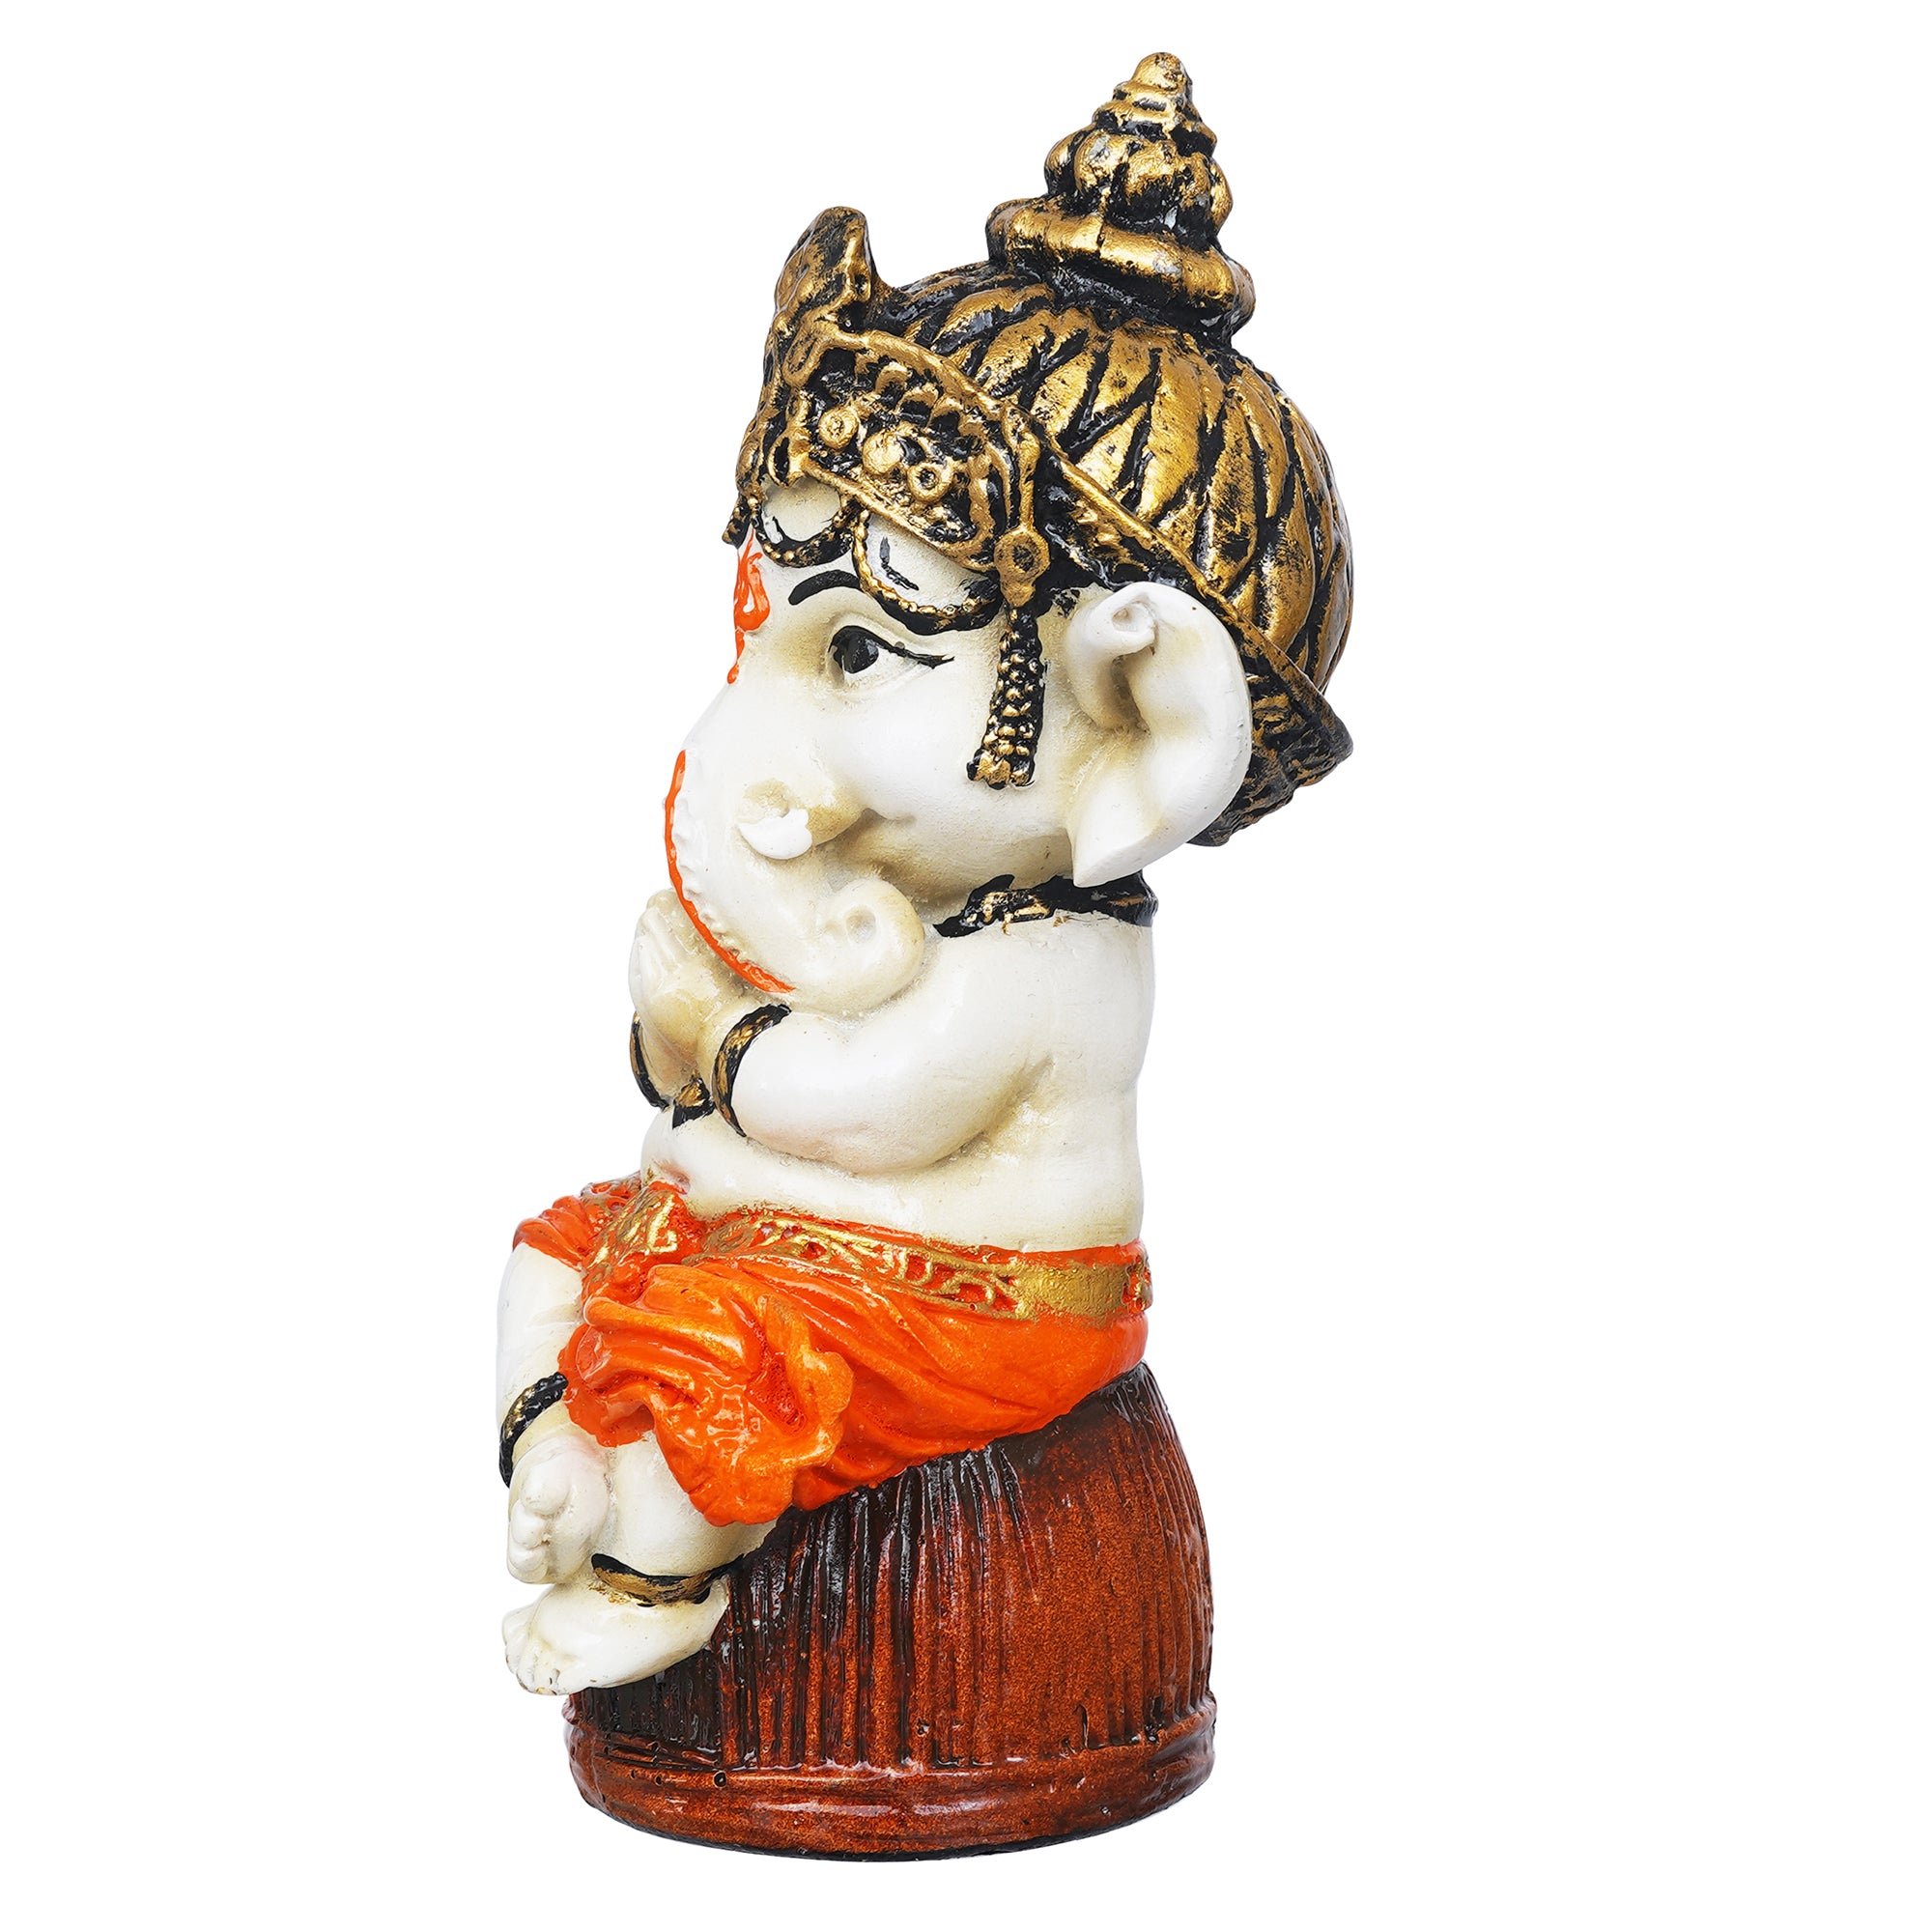 eCraftIndia Orange Polyresin Handcrafted Lord Ganesha Idol Sitting on Rock 7